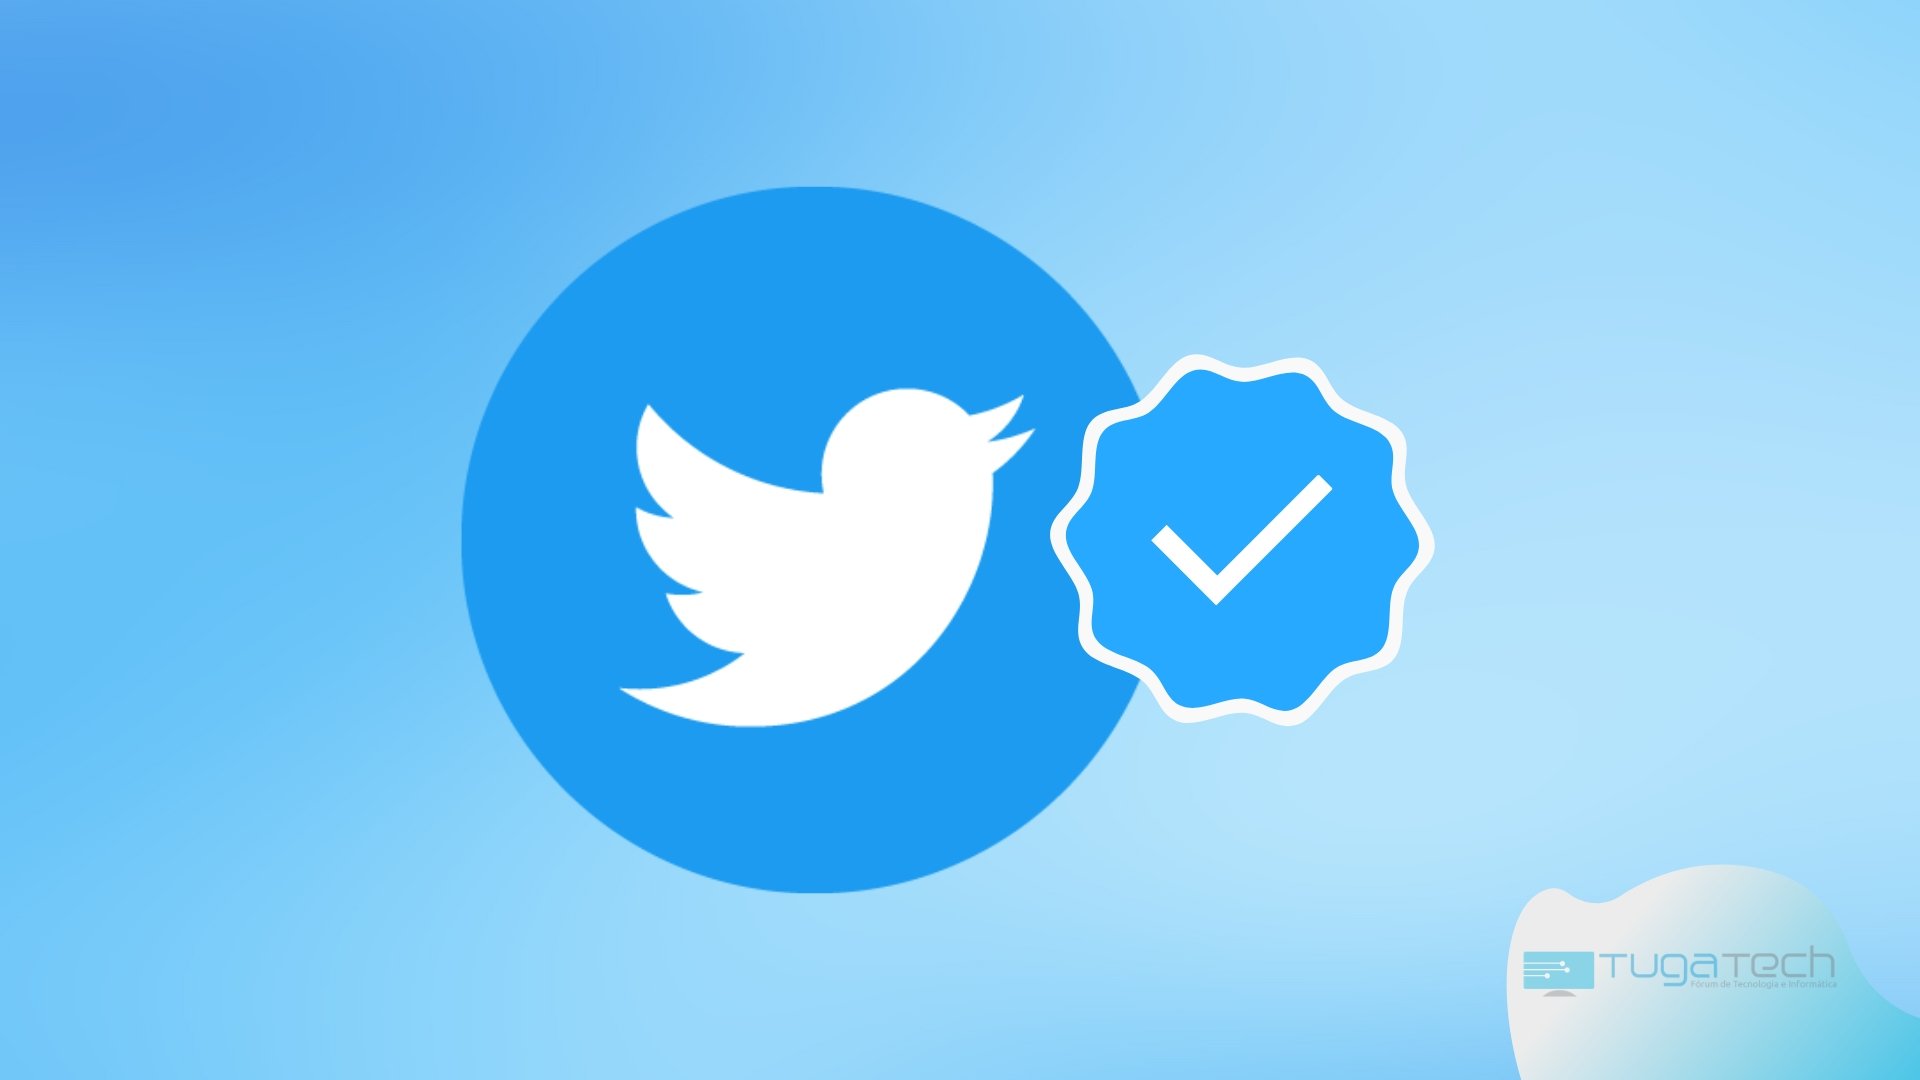 Twitter Blue com símbolo de verificação